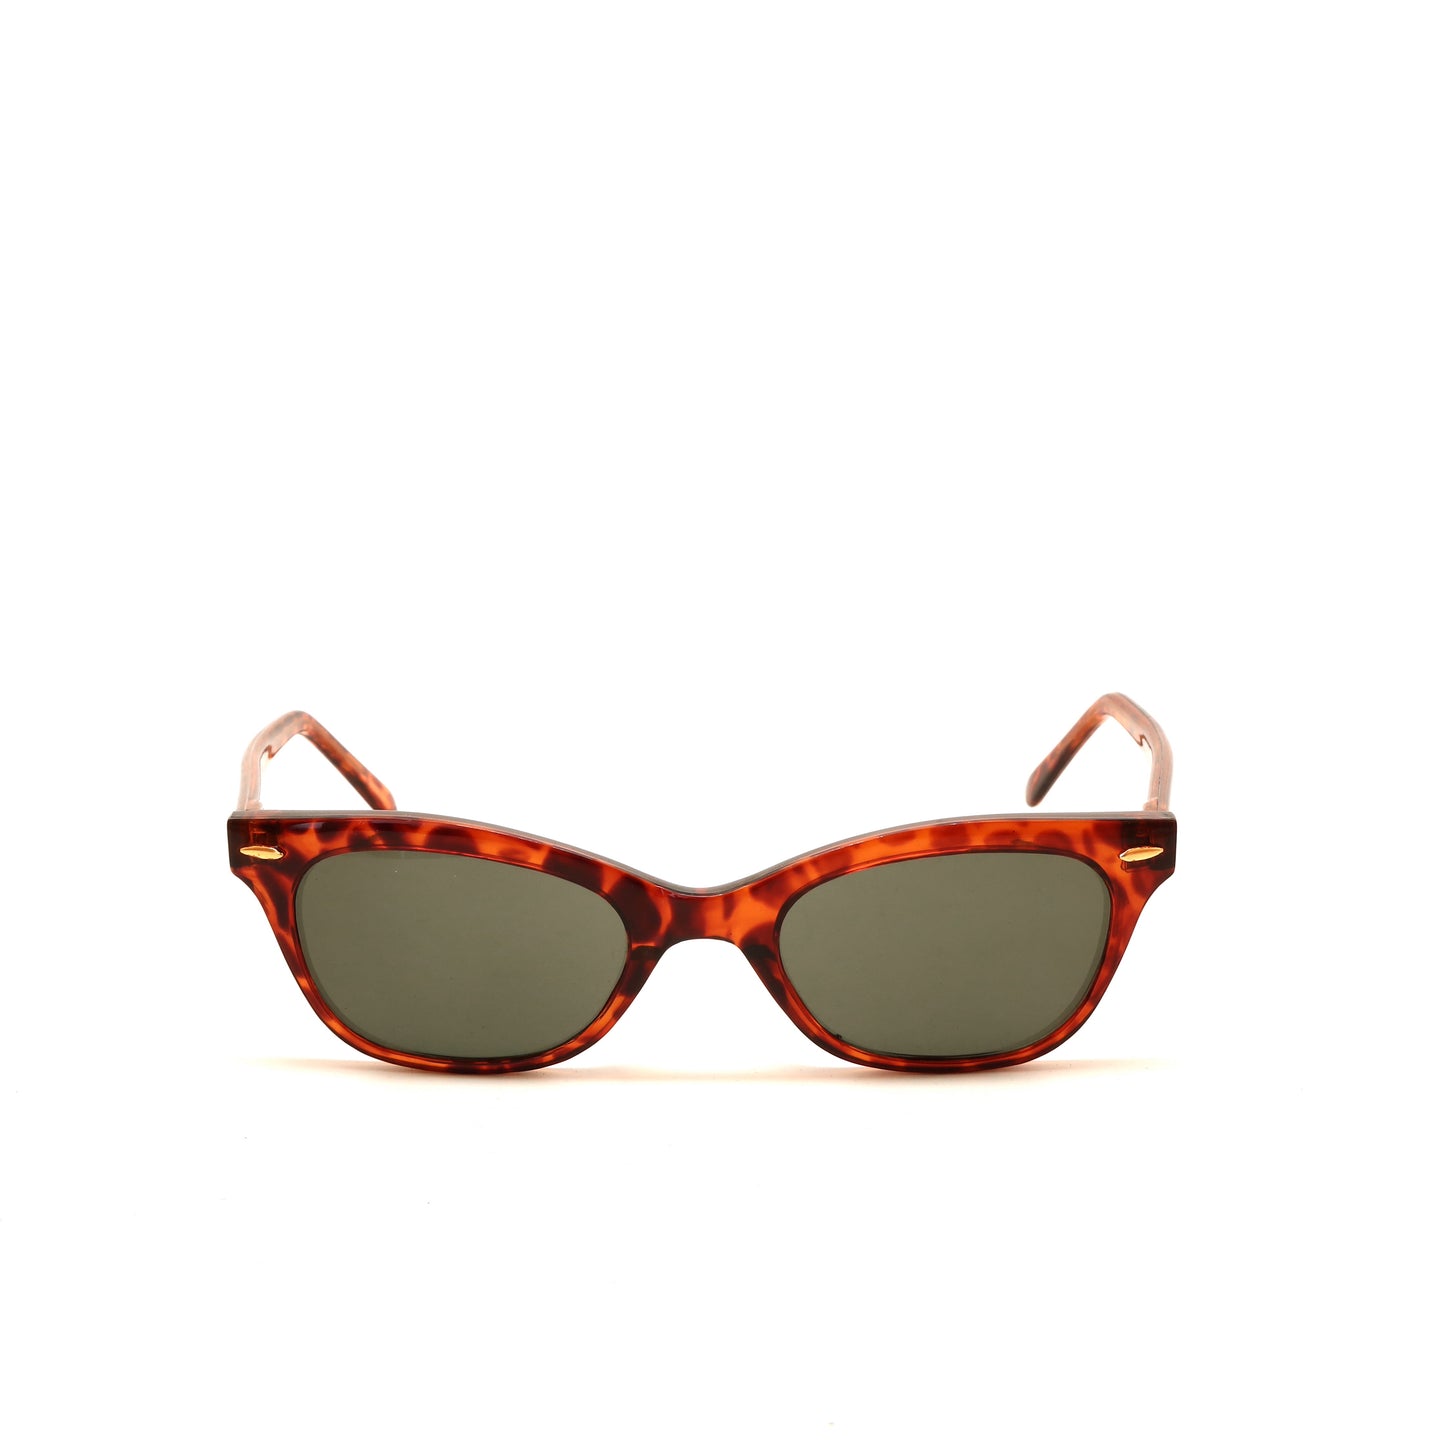 Vintage 90s Hornrimmed Style Wayfarer Sunglasses - Tortoise